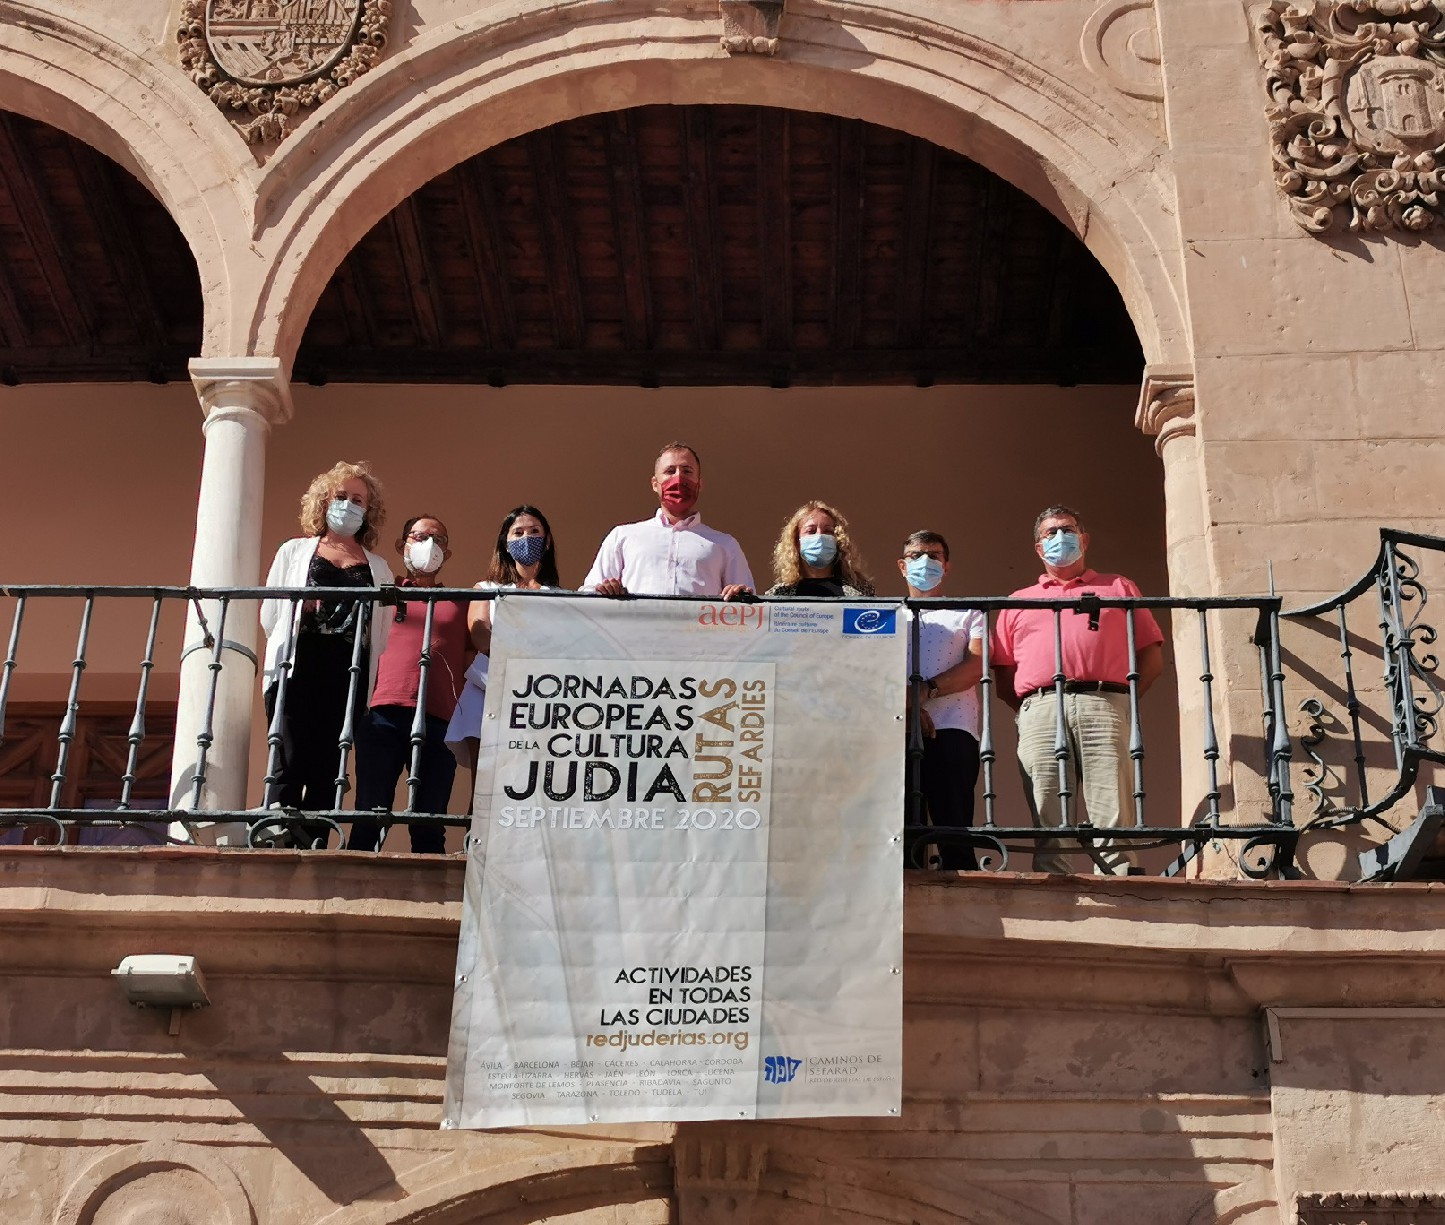 Lorca participa en la 21 edicin de la cultura Juda